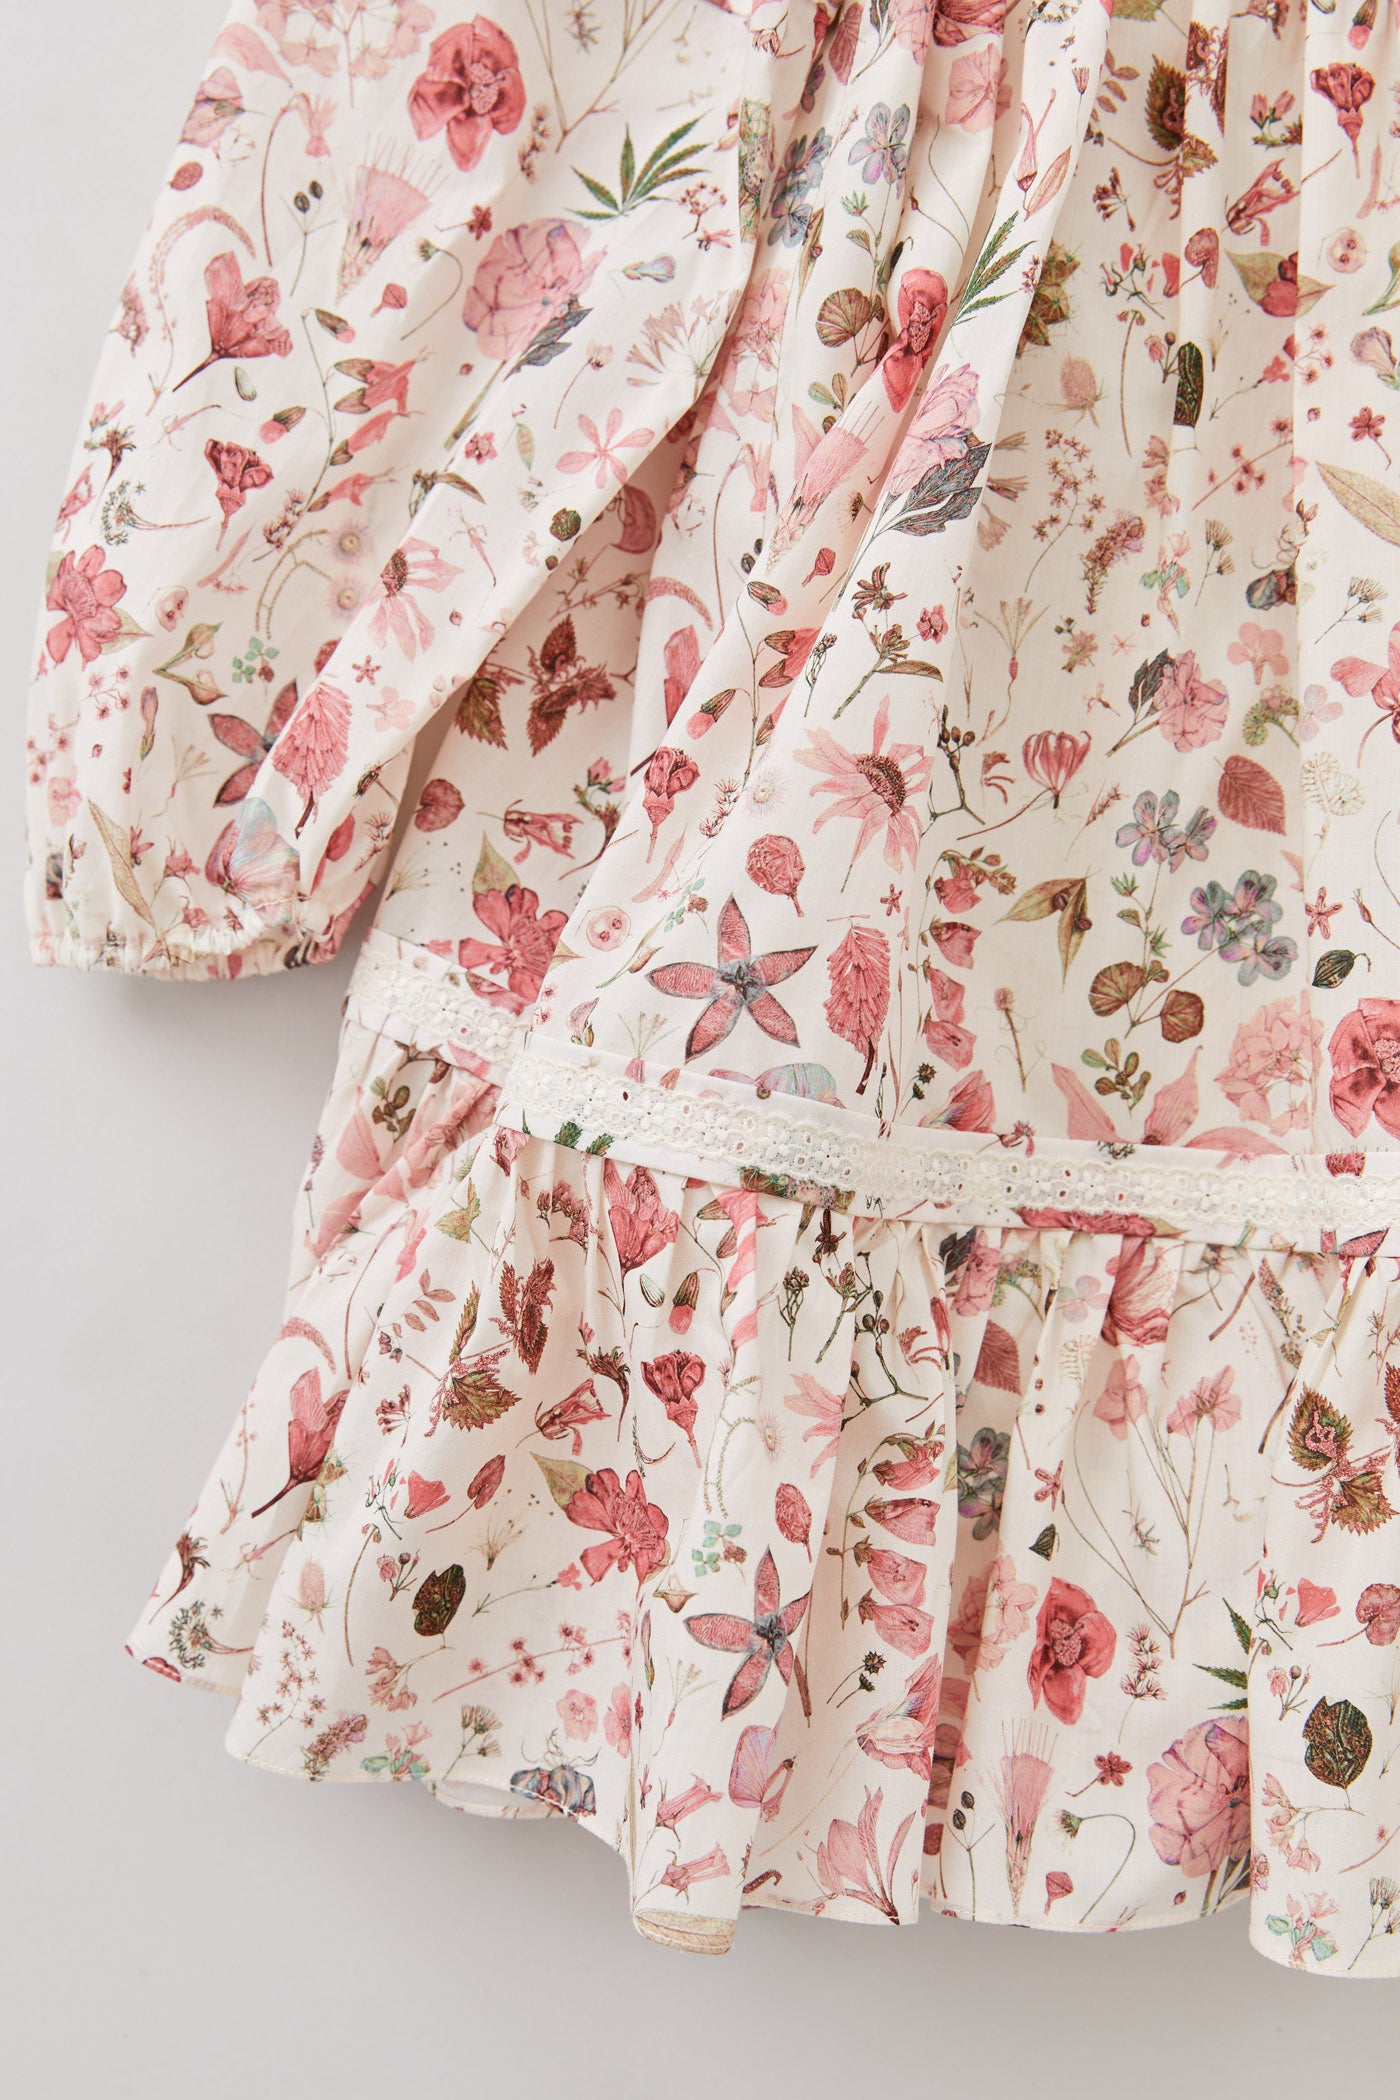 Plumcake Long Sleeve Dress in Marlow Floral Print - Designed by Ingrid Lewis - Strawberries & Cream